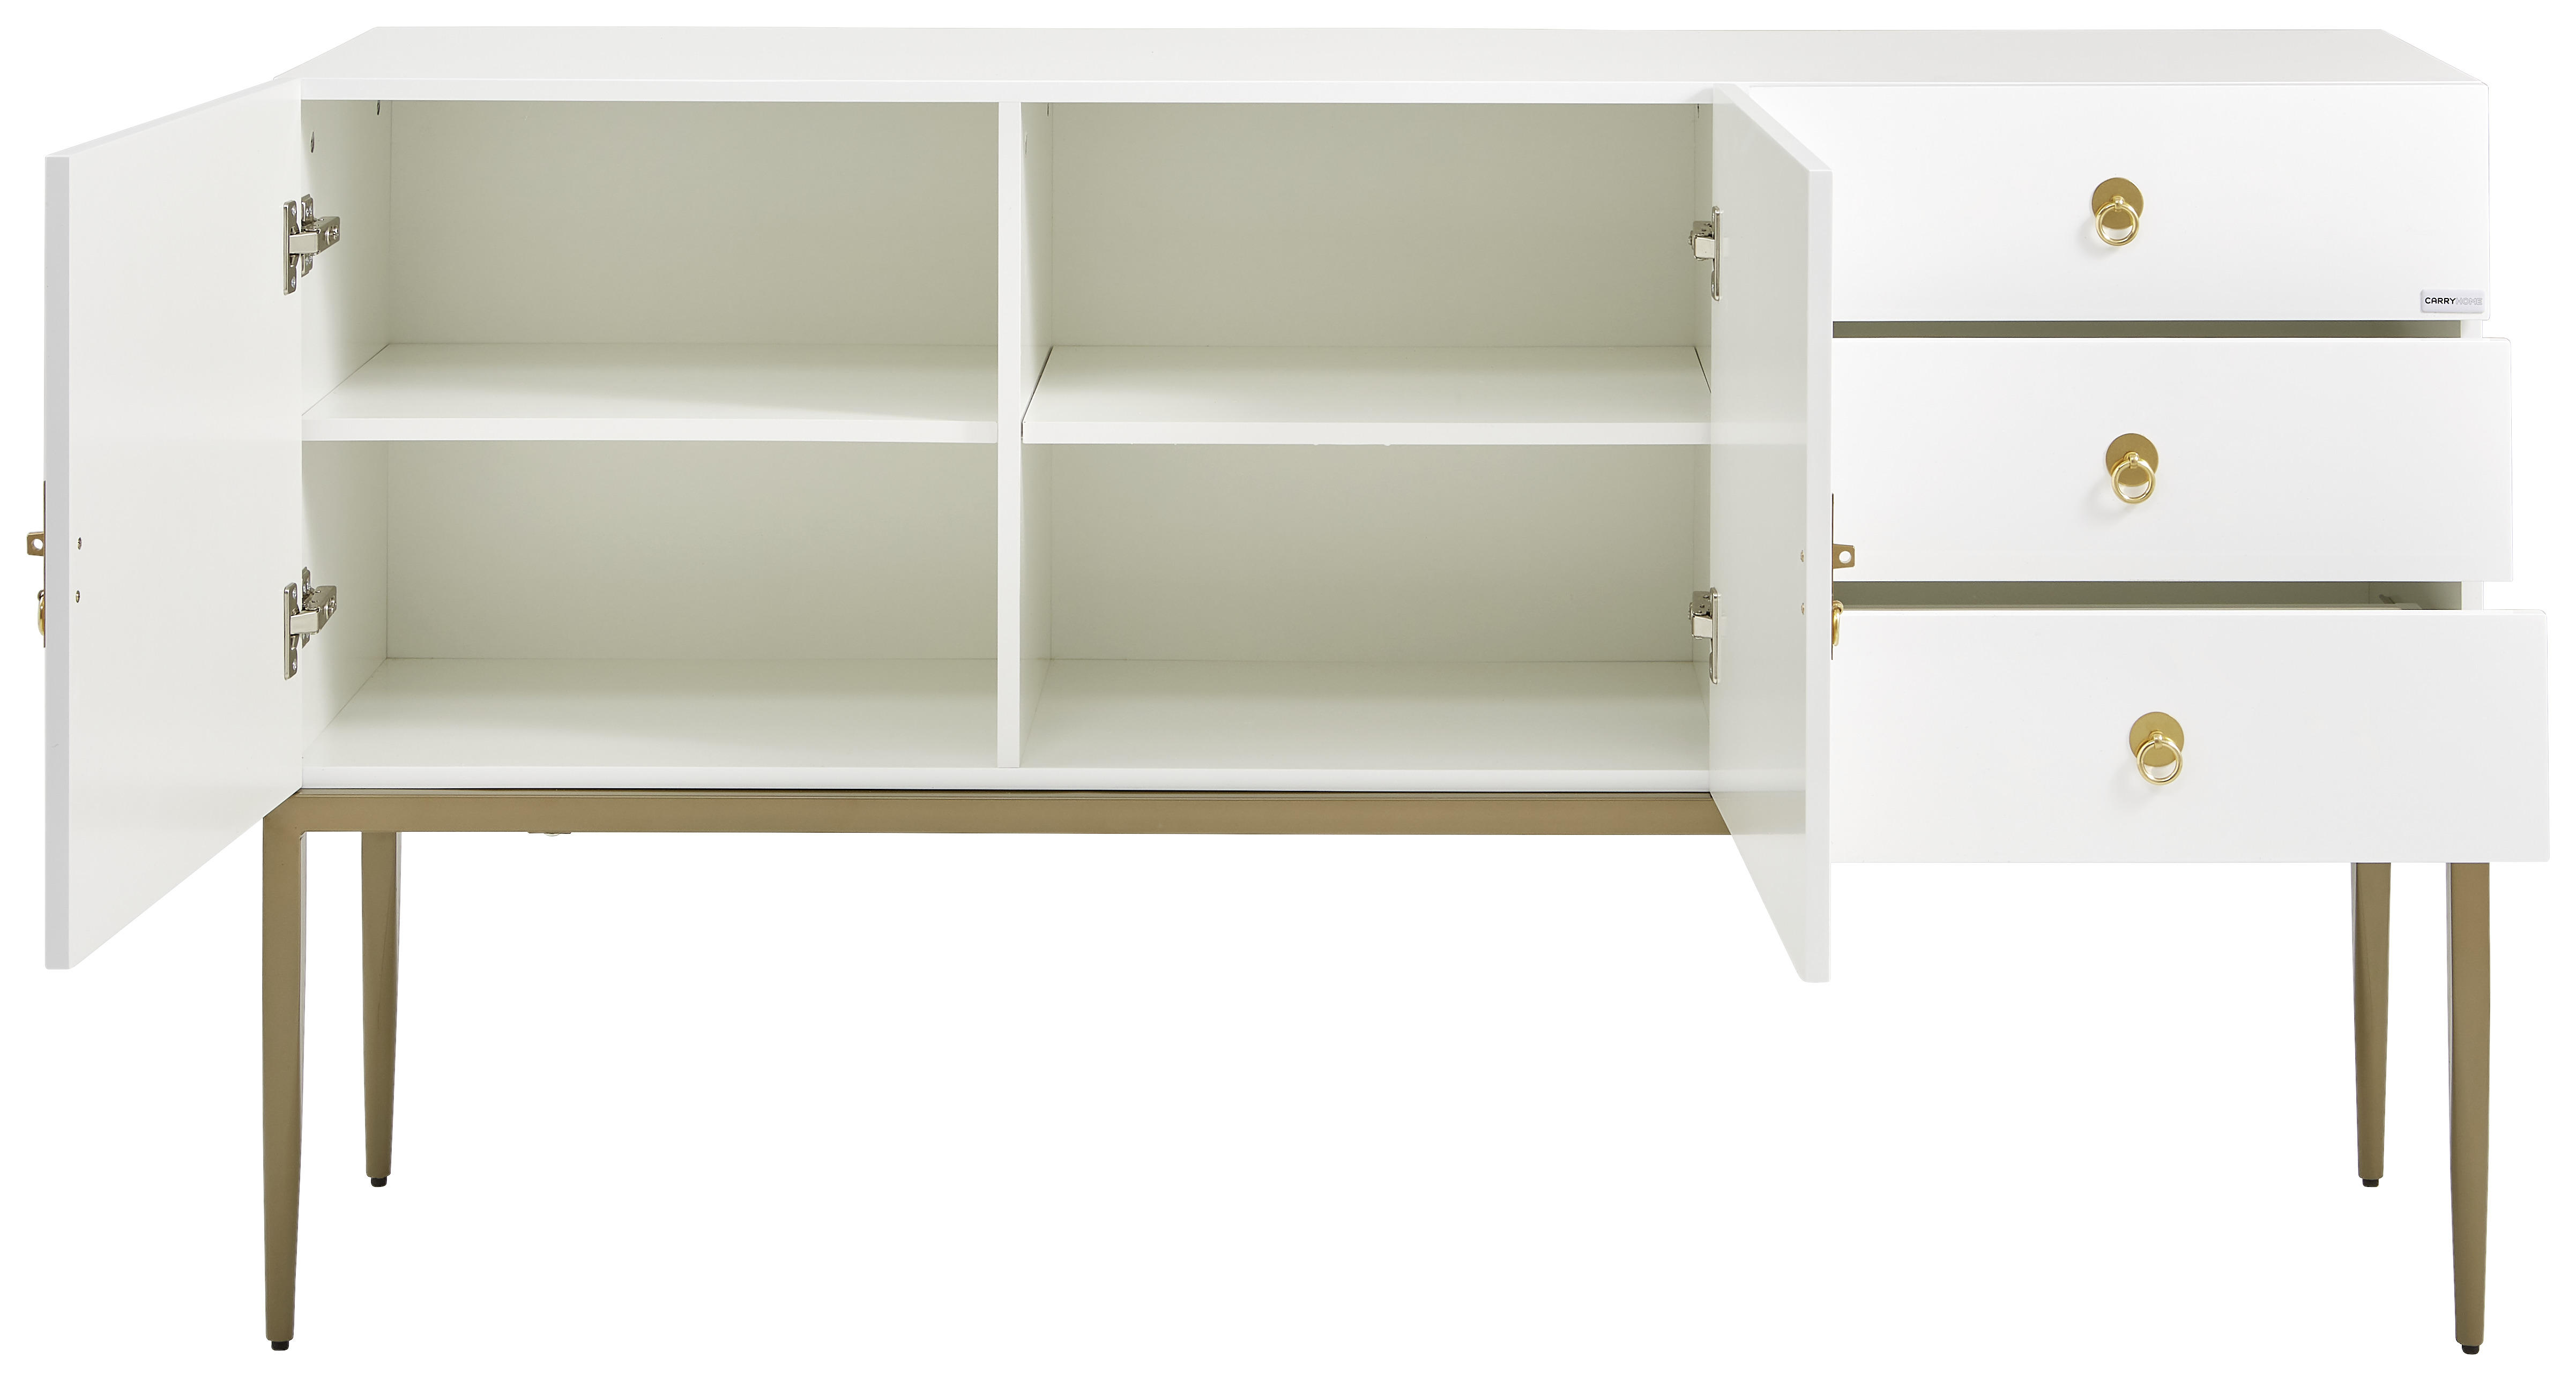 KOMMODE Weiß, Kupferfarben  - Weiß/Kupferfarben, Design, Holzwerkstoff/Metall (150/85/40cm) - Carryhome